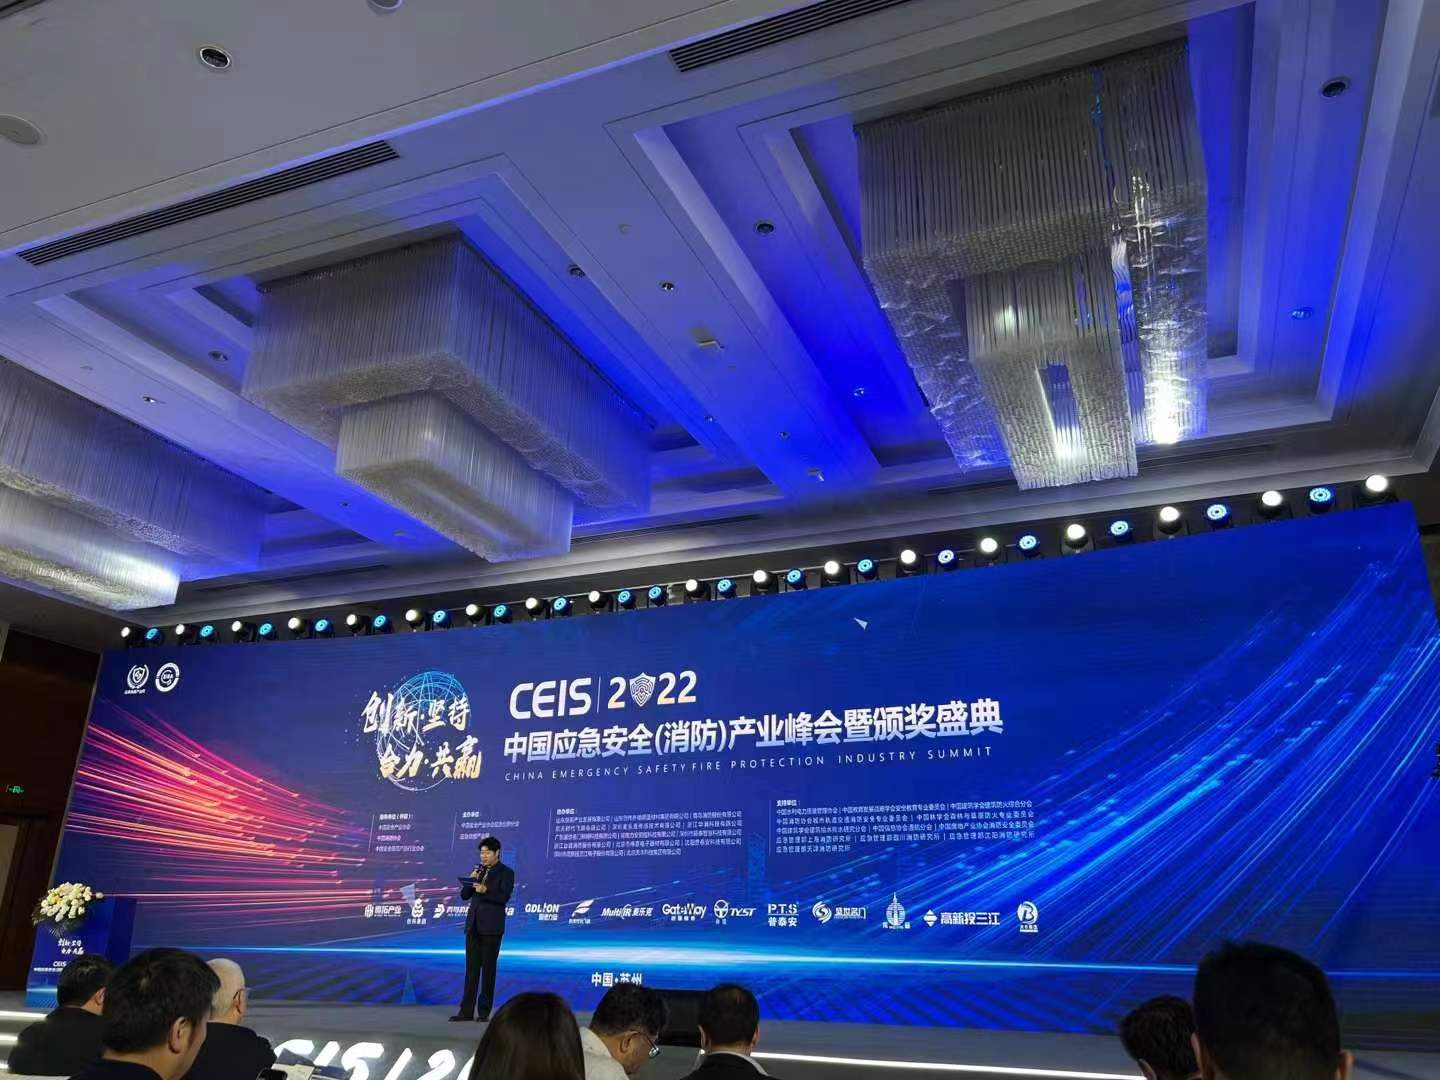 Ķīnas ārkārtas drošības (ugunsdrošības) nozares samits un desmit labāko zīmolu balvas pasniegšanas ceremonija